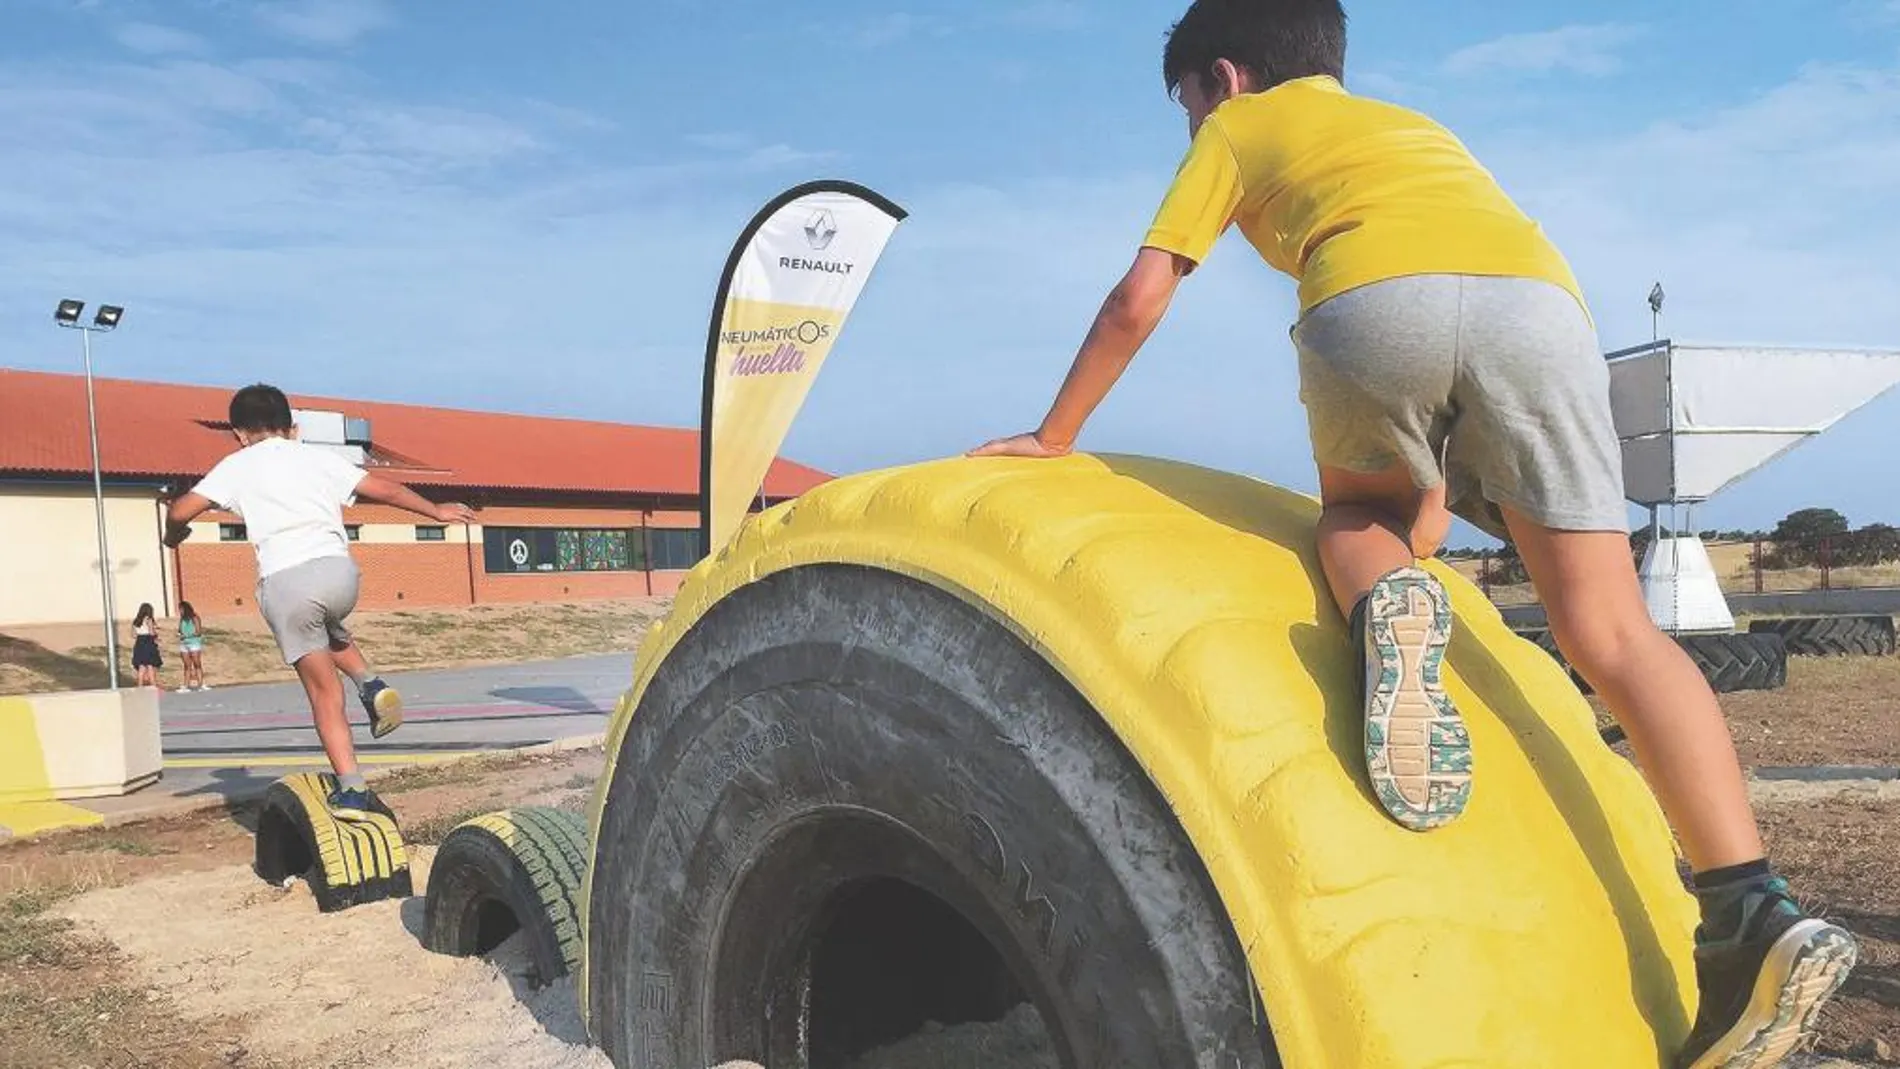 El parque de neumáticos reciclados donde los niños generan electricidad mientras juegan